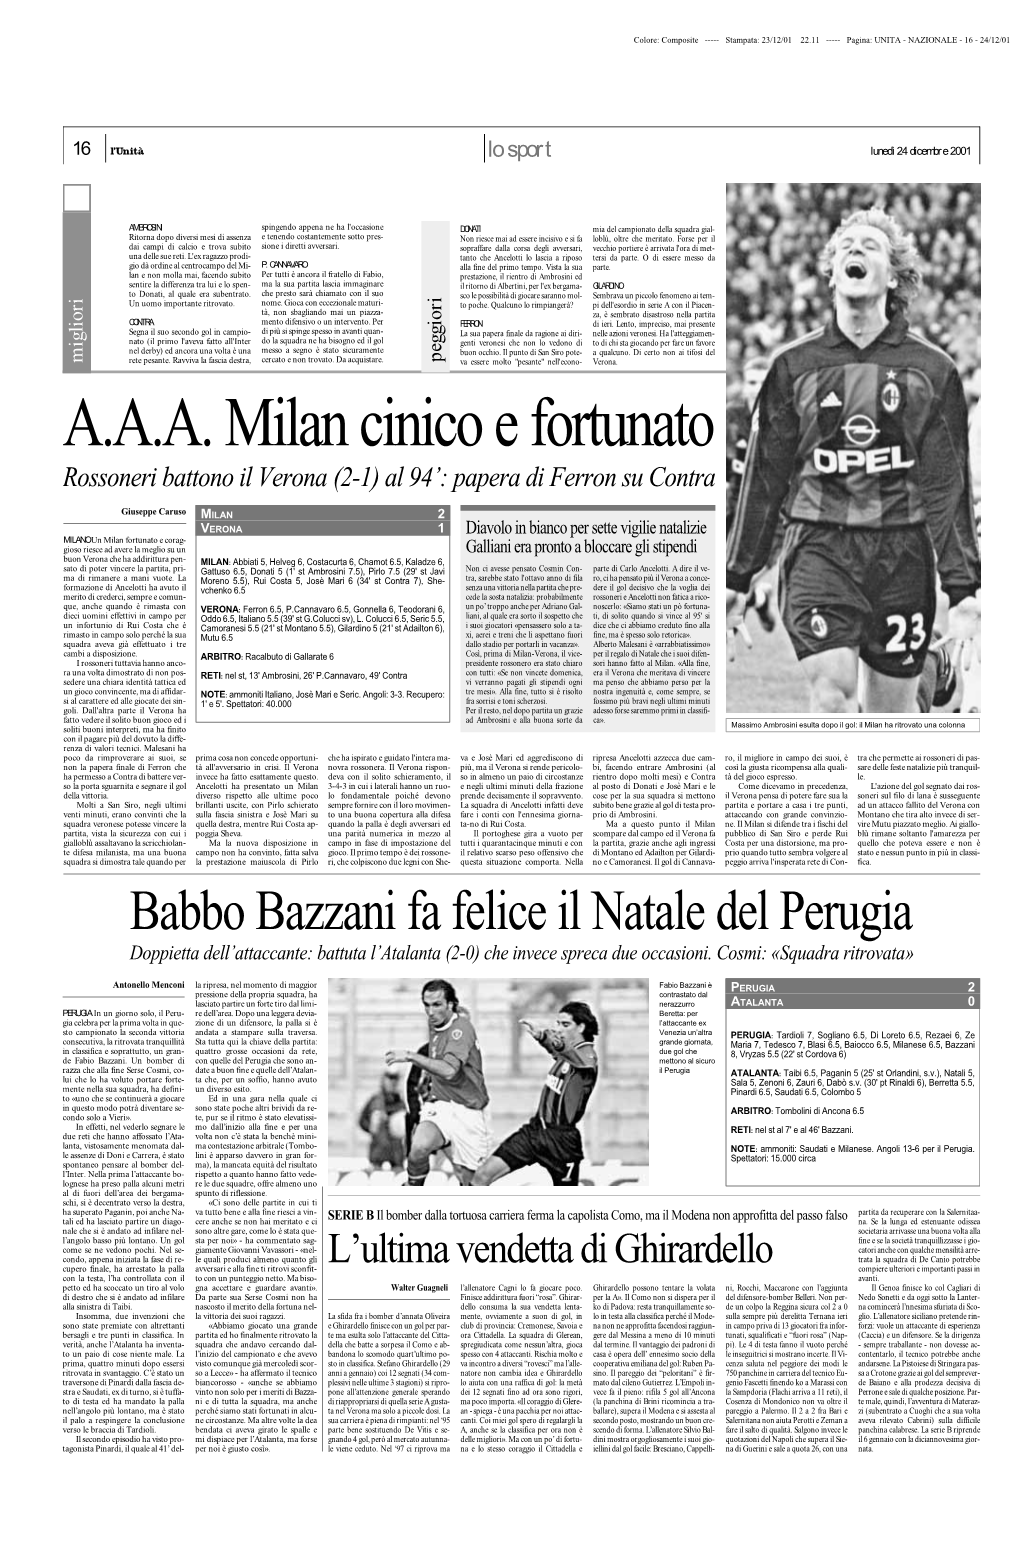 Babbo Bazzani Fa Felice Il Natale Del Perugia Doppietta Dell’Attaccante: Battuta L’Atalanta (2-0) Che Invece Spreca Due Occasioni